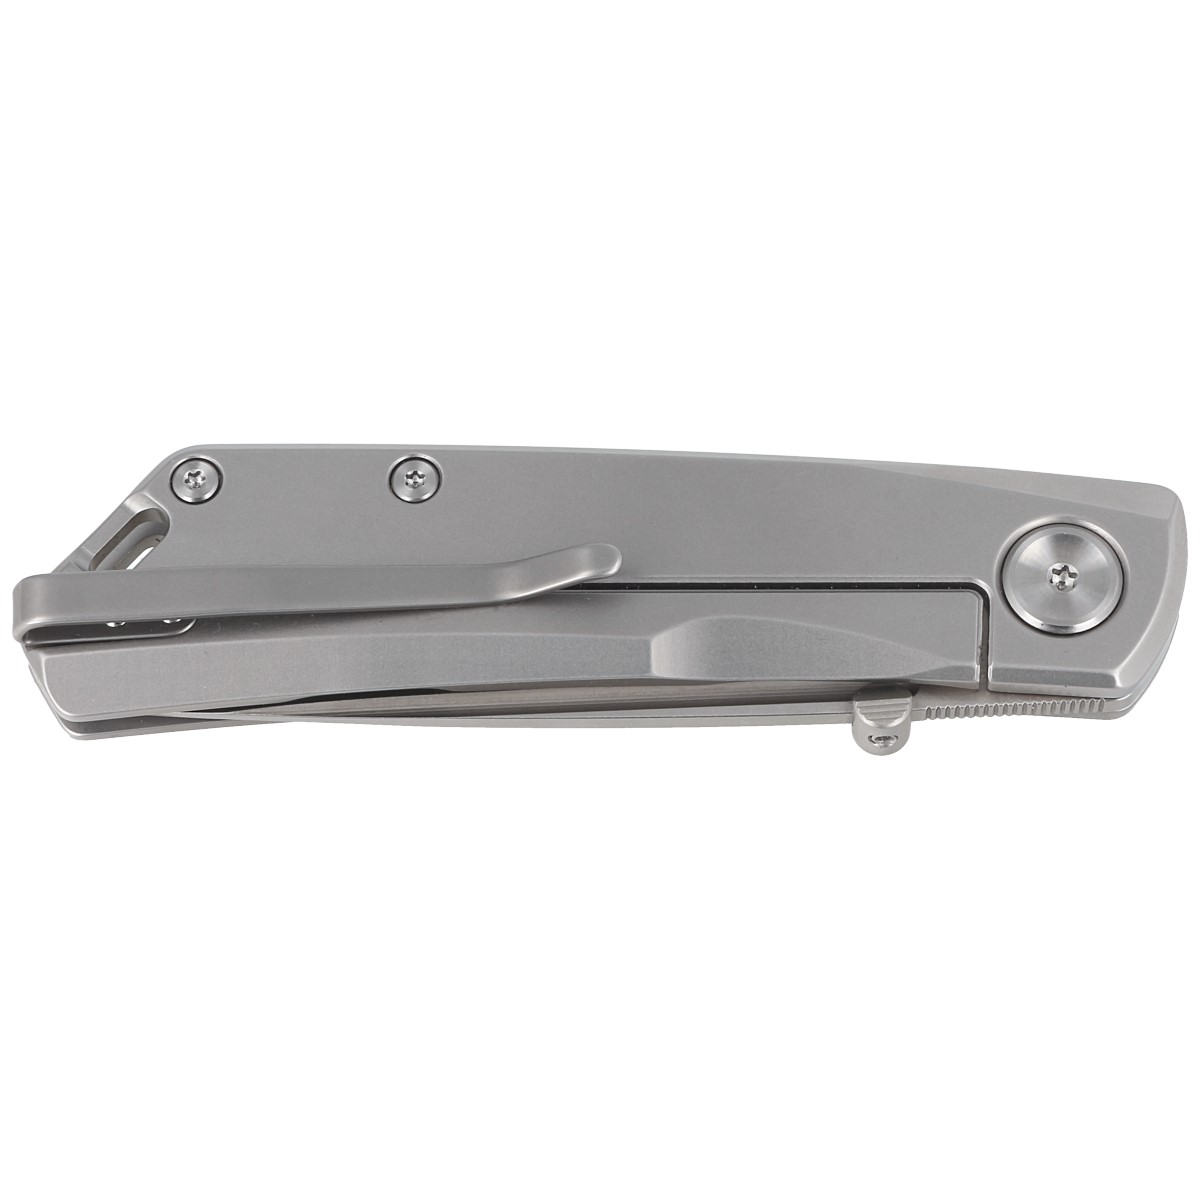  Real Steel Luna Eco Folding Pocket Knife - Bohler K110